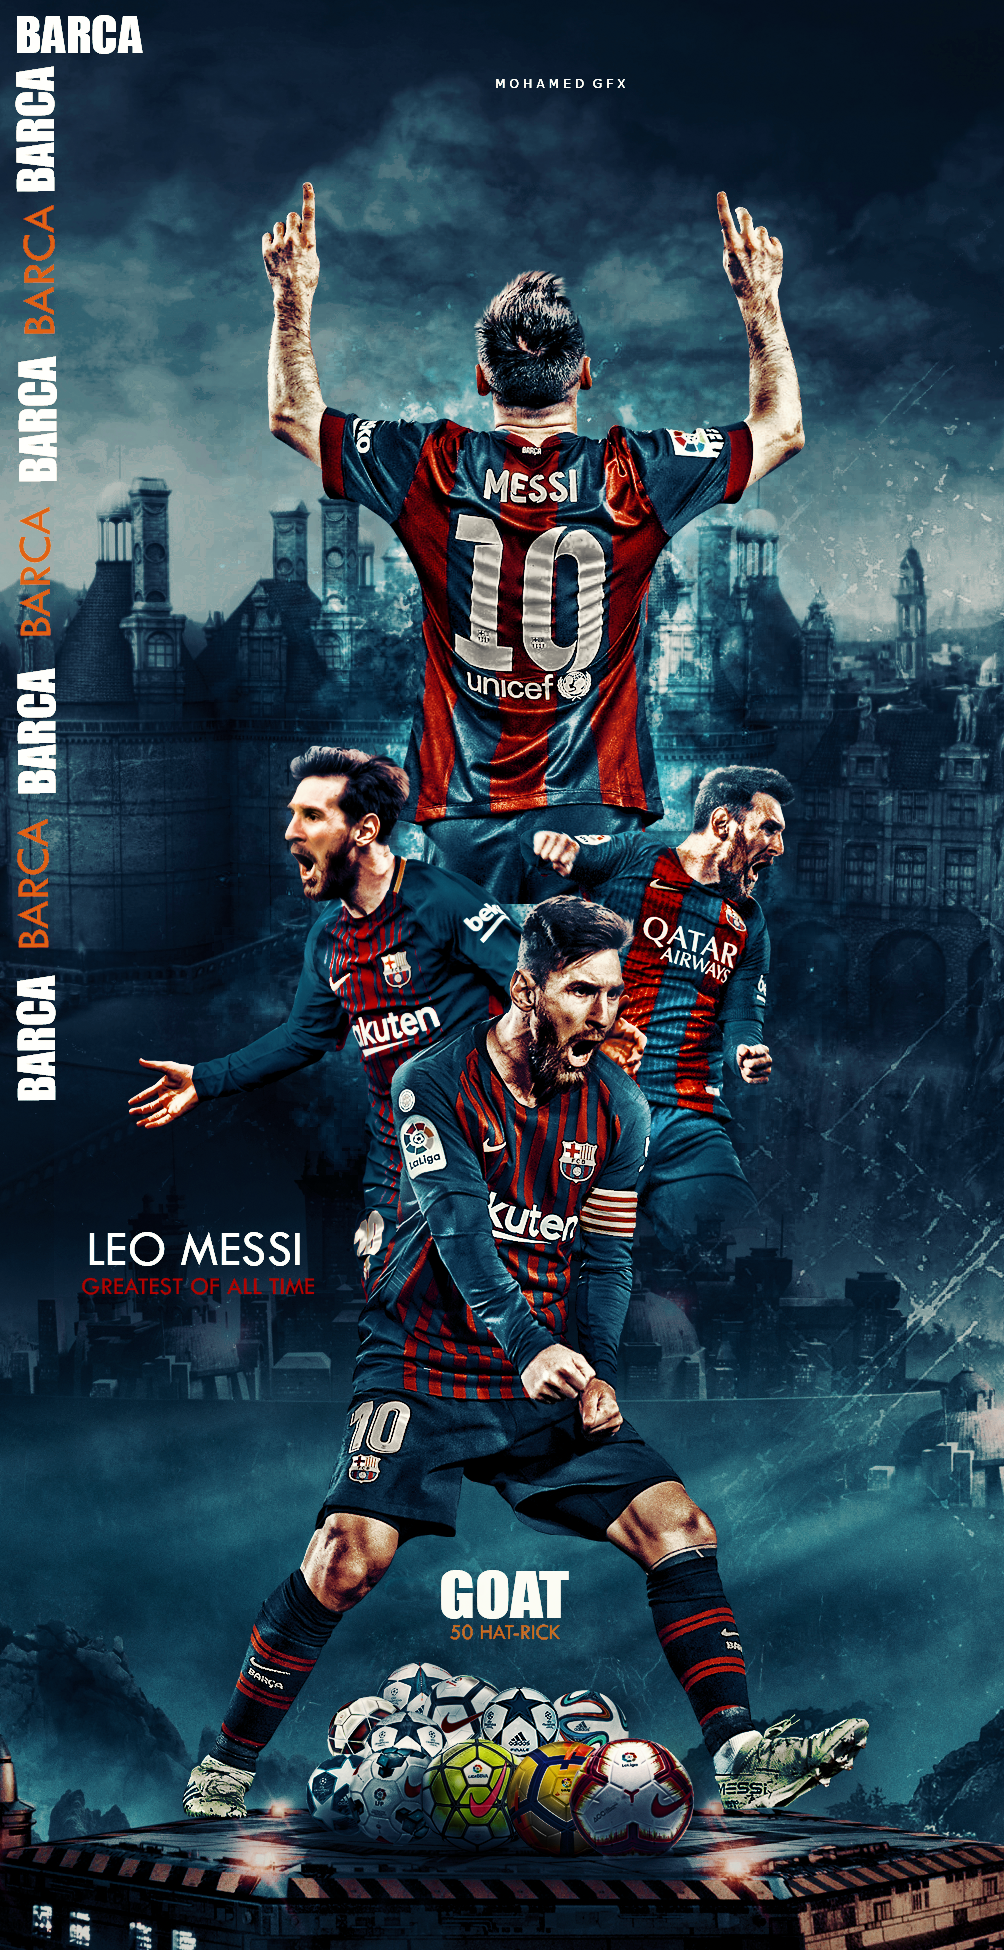 Lionel Messi: Để thấy siêu sao bóng đá Lionel Messi trong hình ảnh đầy cảm hứng và tài năng, bạn không nên bỏ lỡ bức hình này. Hãy cùng nhìn ngắm vẻ đẹp và sự xuất sắc của Messi, người được xem là một trong những cầu thủ xuất sắc nhất mọi thời đại.